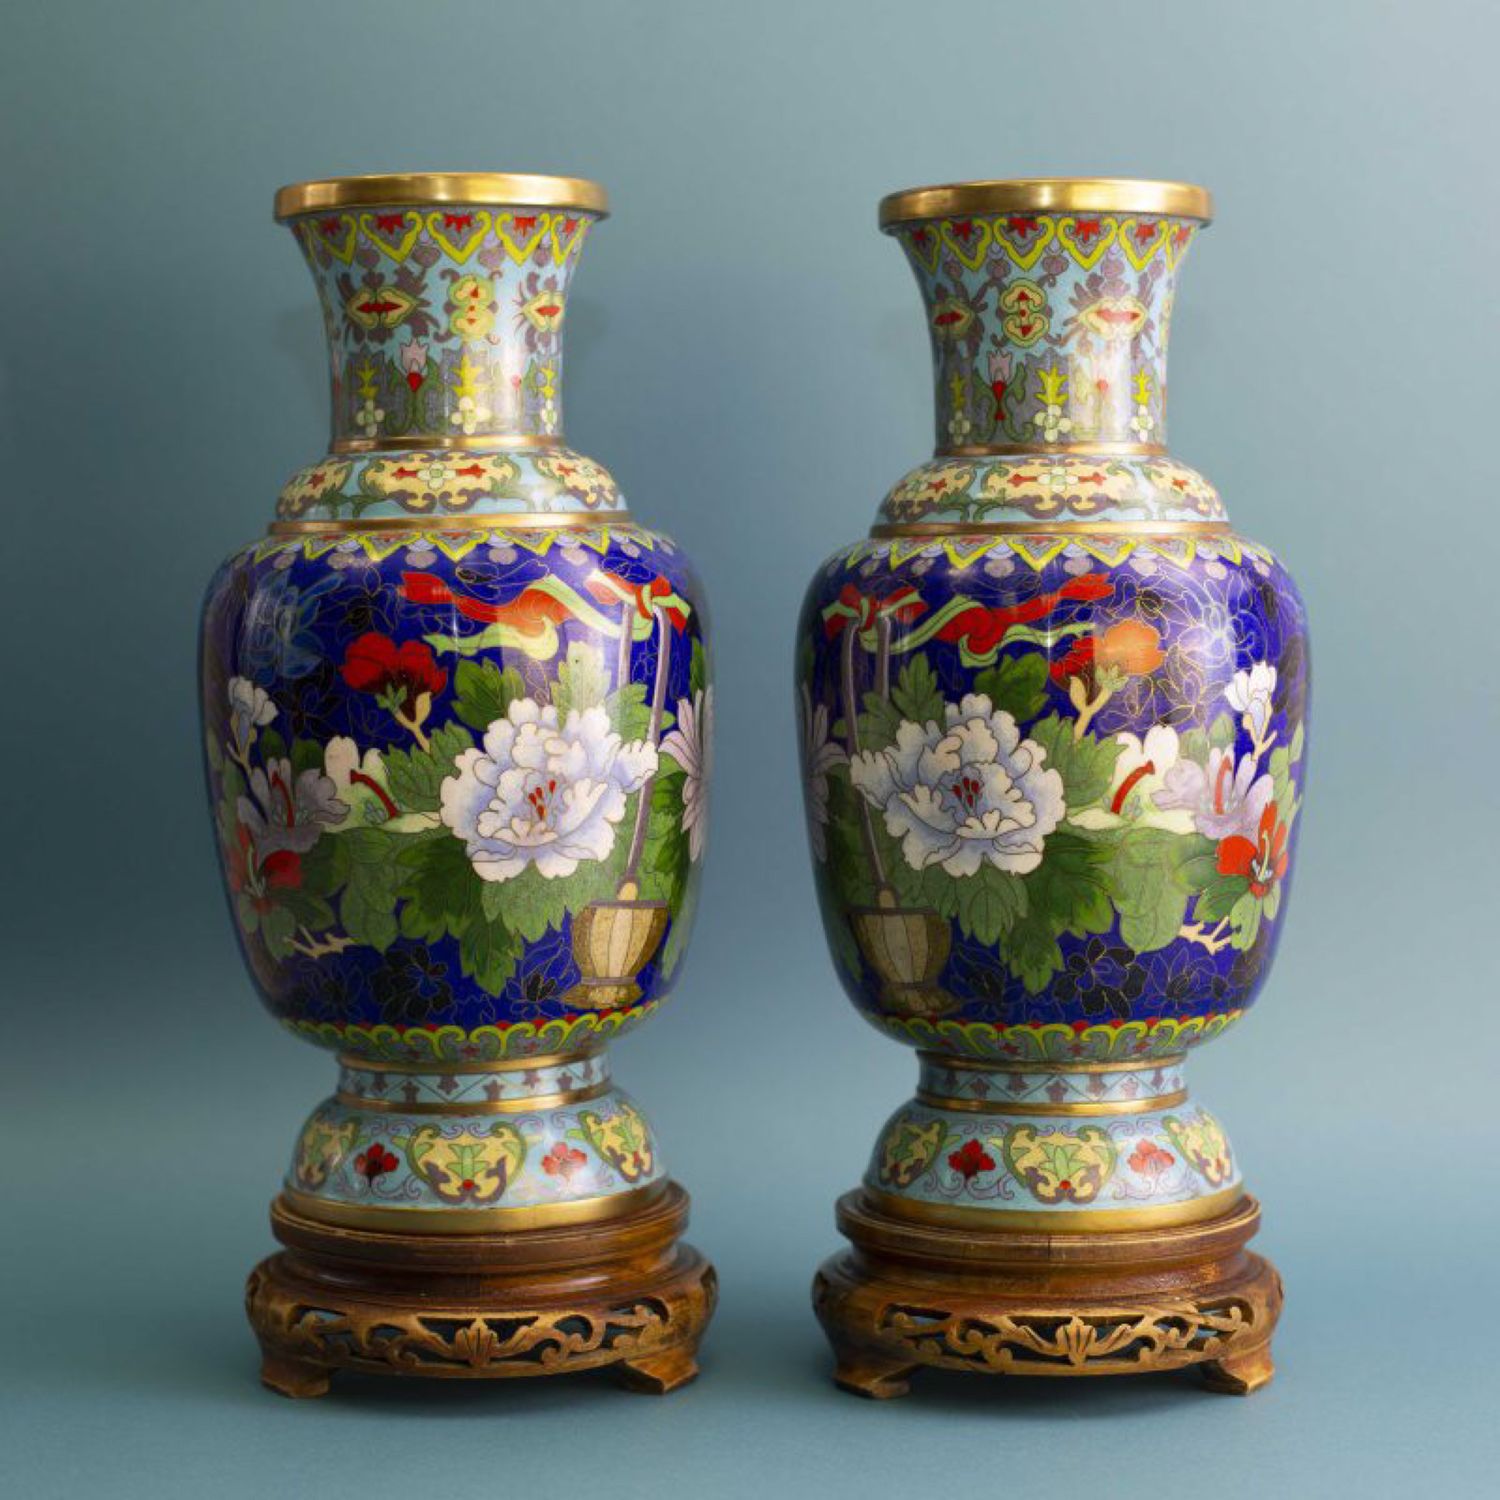 100 000 изображений по запросу Китайская ваза доступны в рамках роялти-фри лицензии